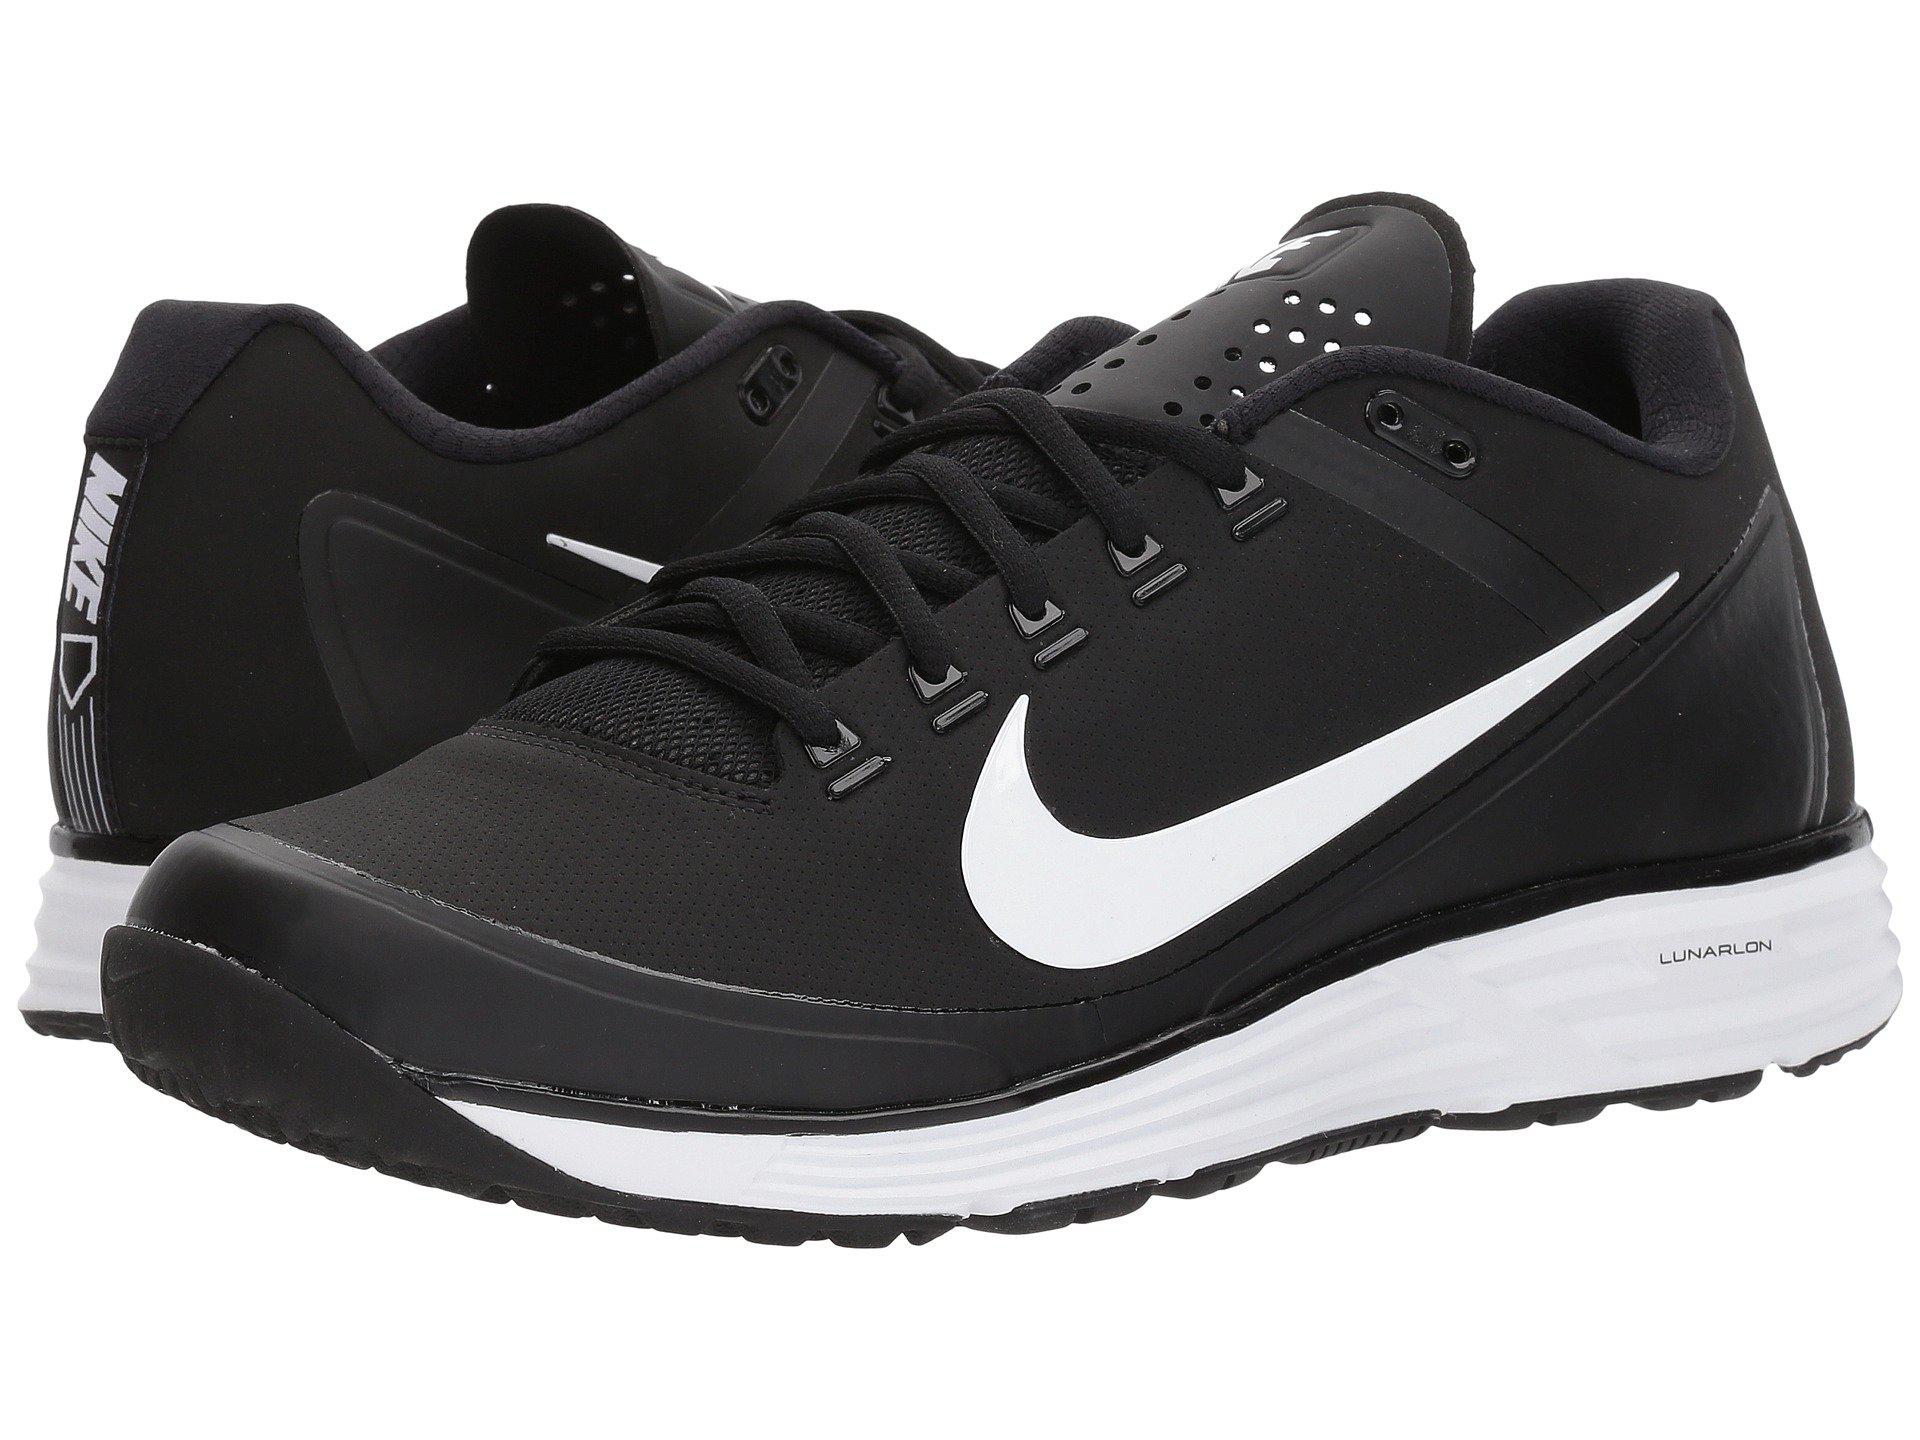 Nike Synthetic Lunar Clipper '17 Baseball Turf Shoe in Black/White/Black  (Black) for Men | Lyst